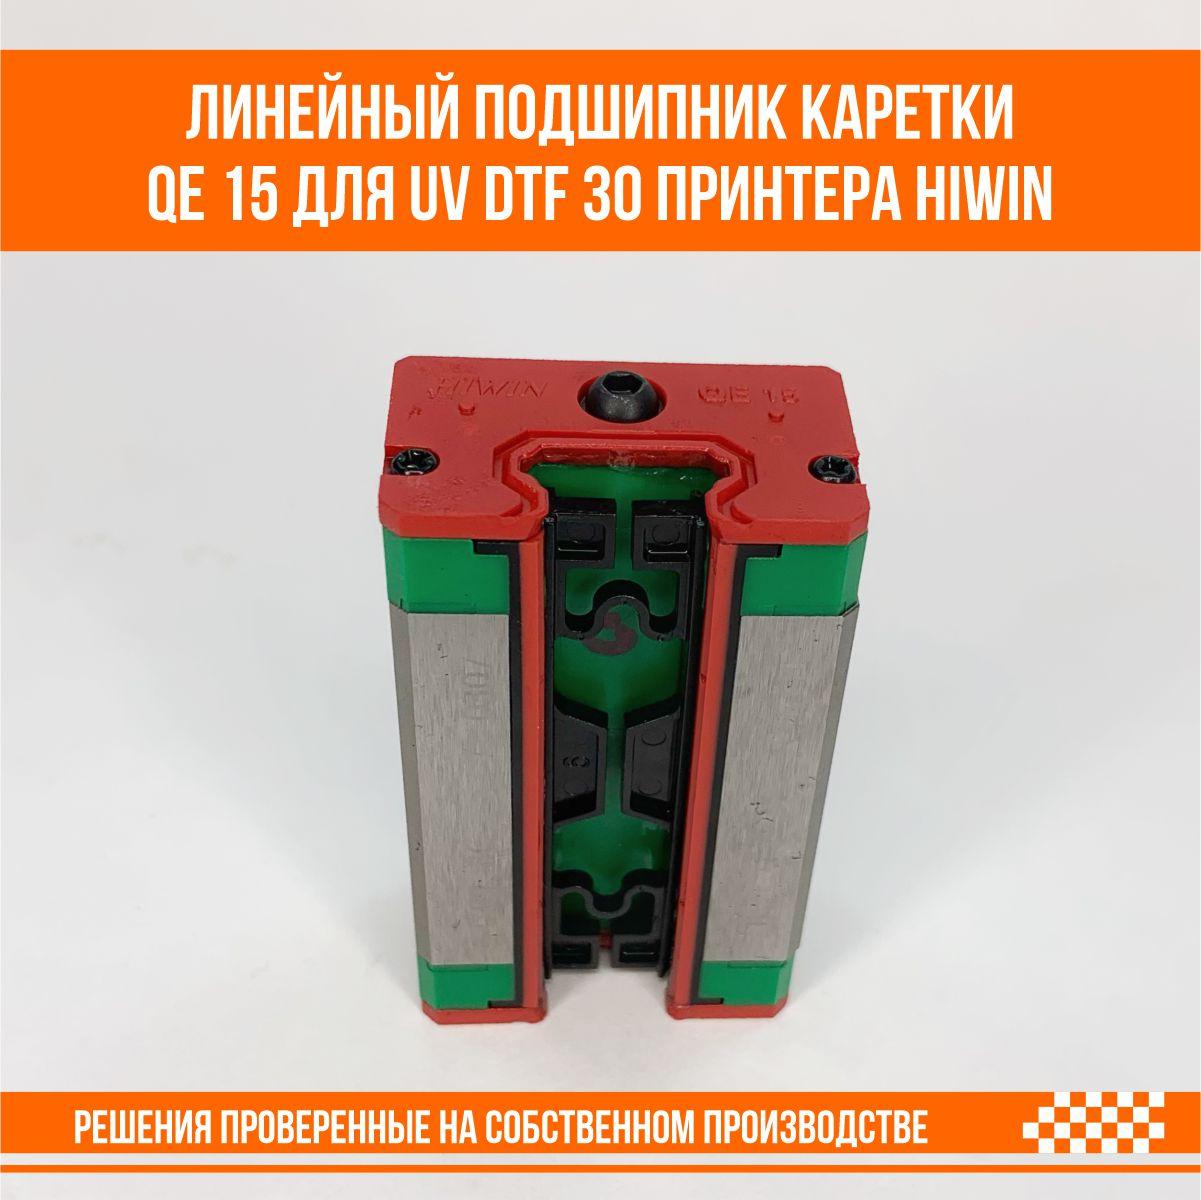 Подшипник каретки линейный UV DTF 30 принтера QEH 15 от производителя Hiwin, Слайдер D002T105